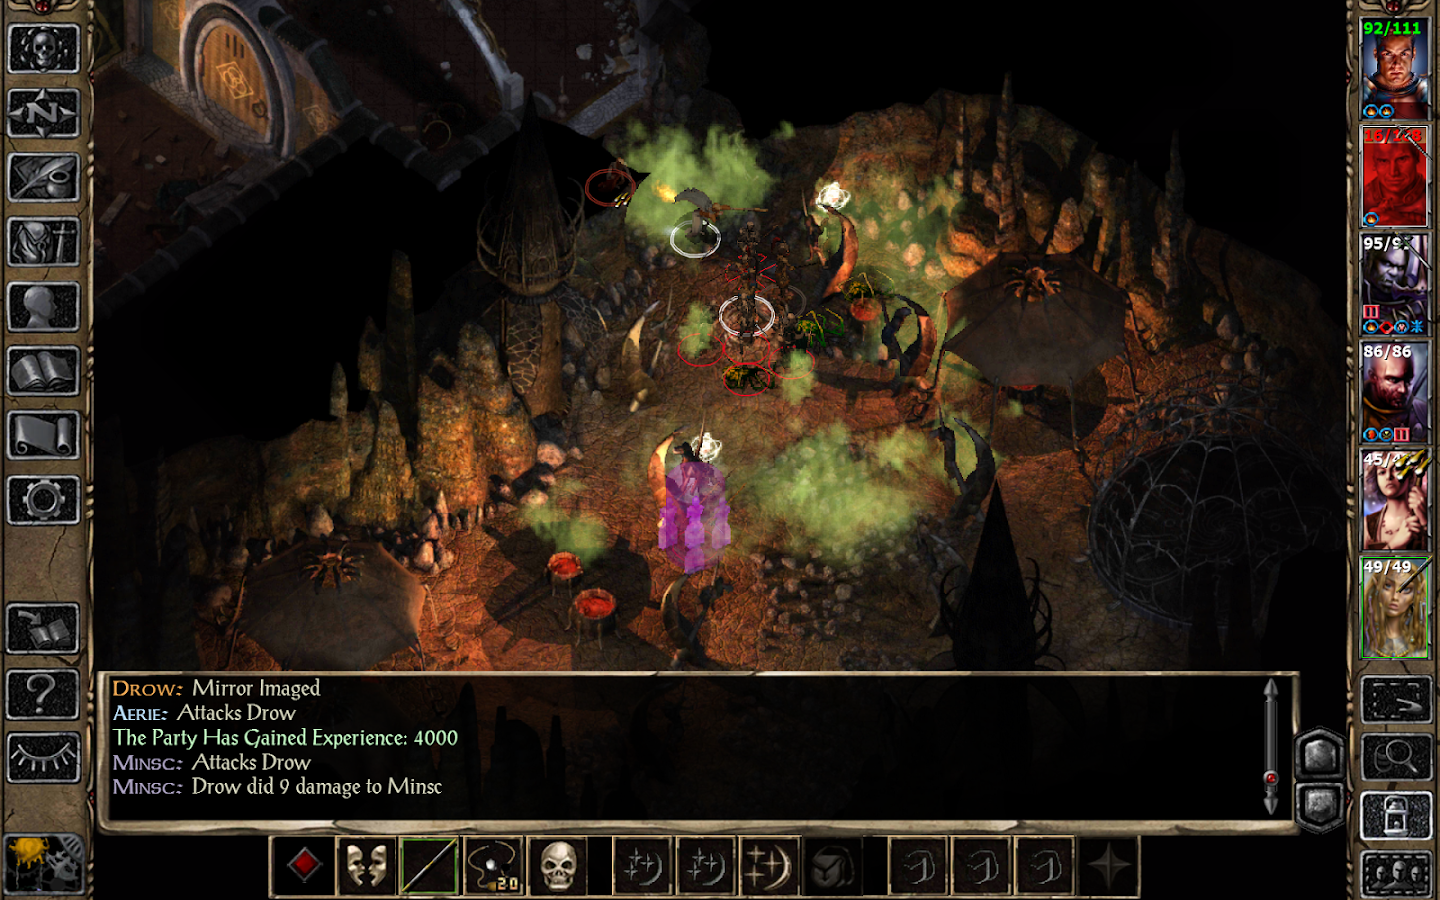 Baldur's Gate II - screenshot